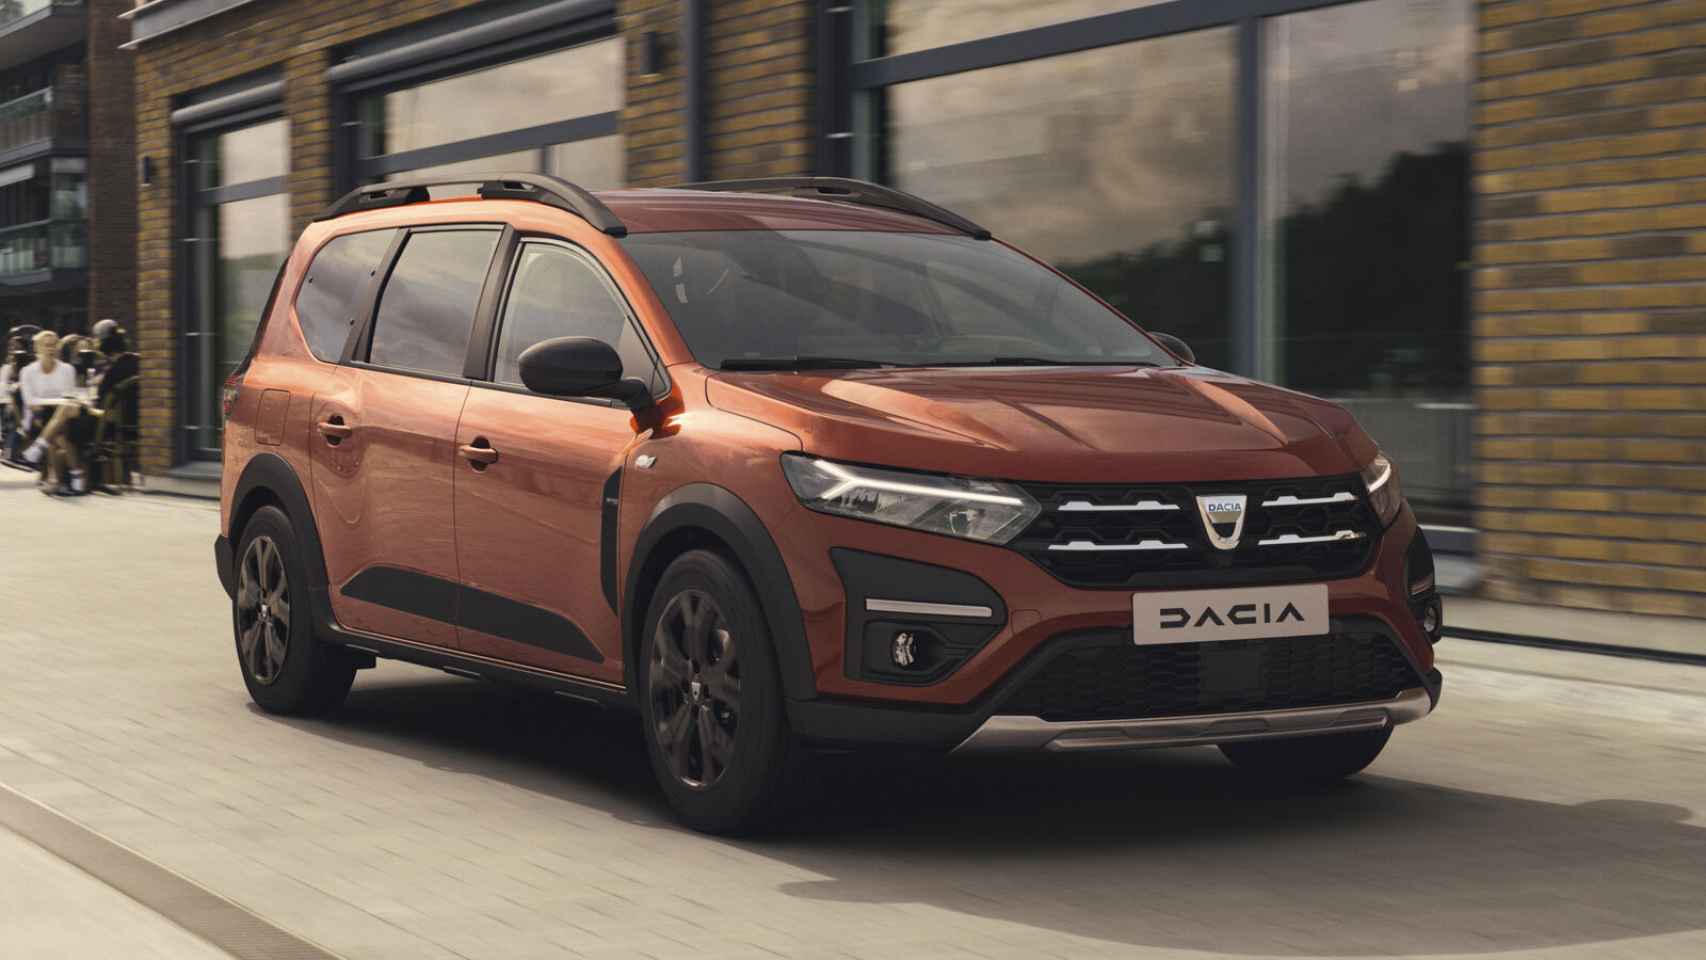 Atención familias numerosas: el Dacia Jogger, con siete plazas, puede ser vuestro próximo coche